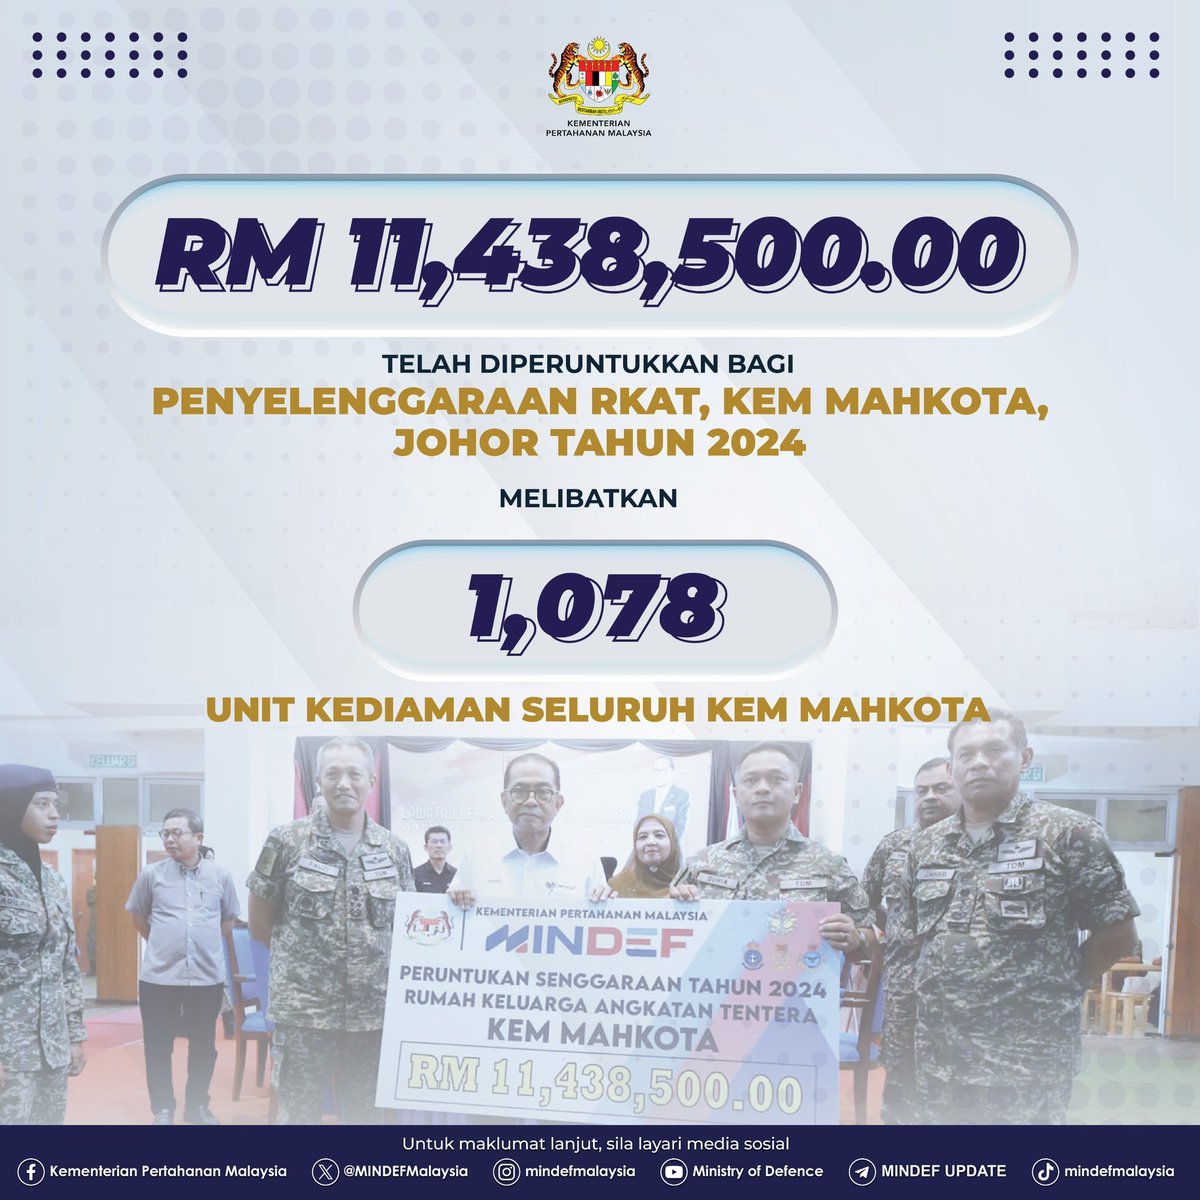 Penyerahan peruntukan untuk membaik pulih dan penyelenggaraan Rumah Keluarga Angkatan Tentera (RKAT) sebanyak RM 11,438,500.00 melibatkan 1,078 unit kediaman seluruh kem Mahkota Kluang, Johor. 

#MinDefMalaysia
#MinDefUpdate
#kebajikananggotaatm
#RKAT